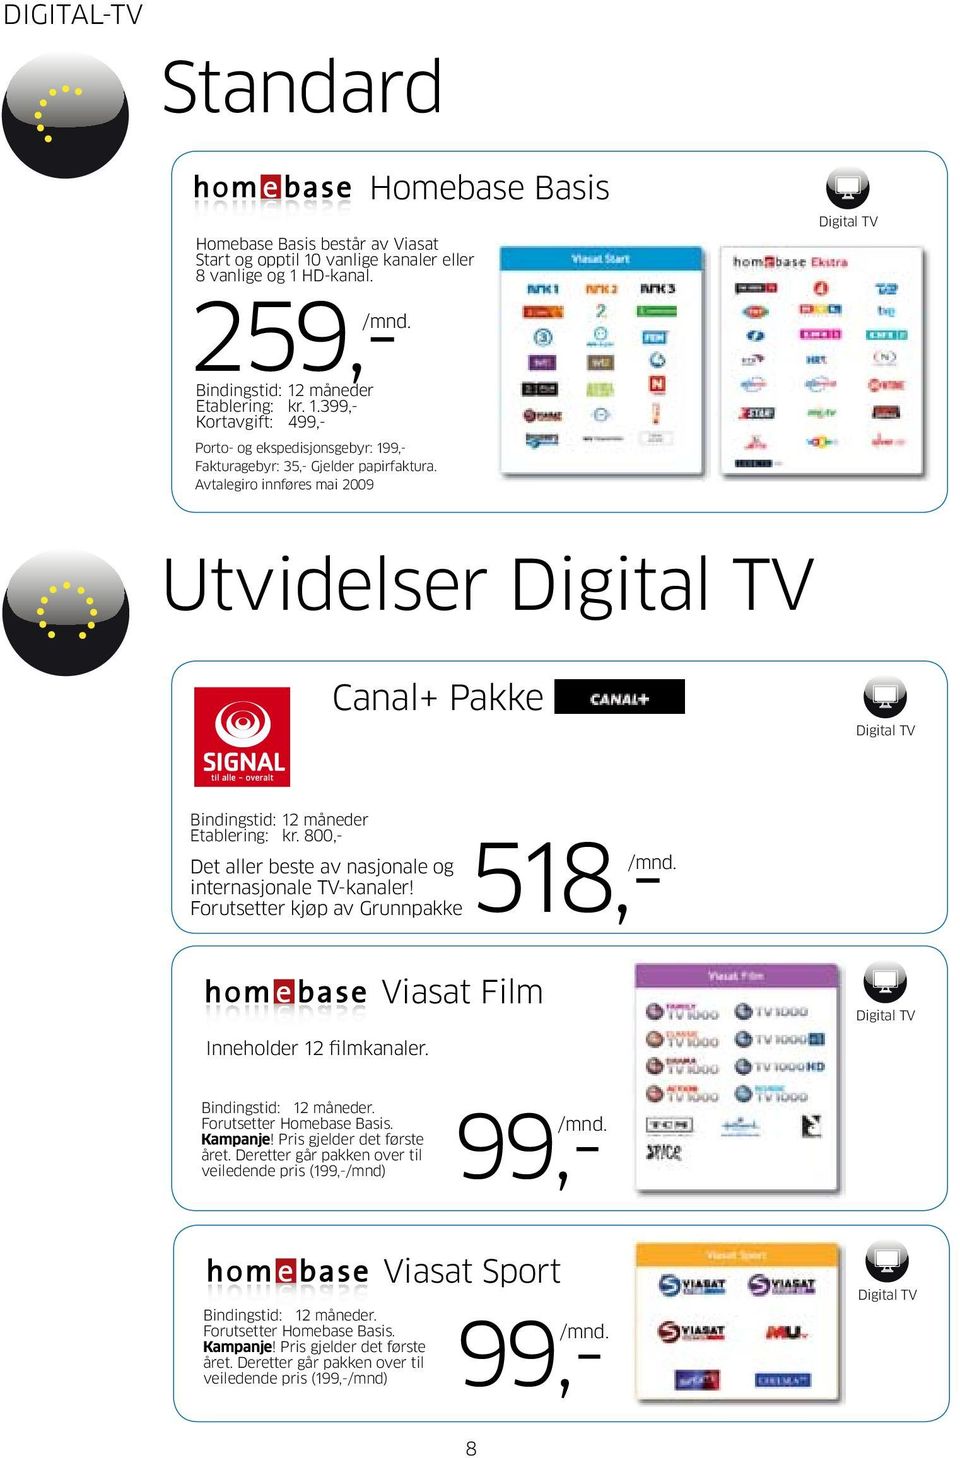 Forutsetter kjøp av Grunnpakke518,- Inneholder 12 filmkanaler. Viasat Film. Kampanje! Pris gjelder det første året.